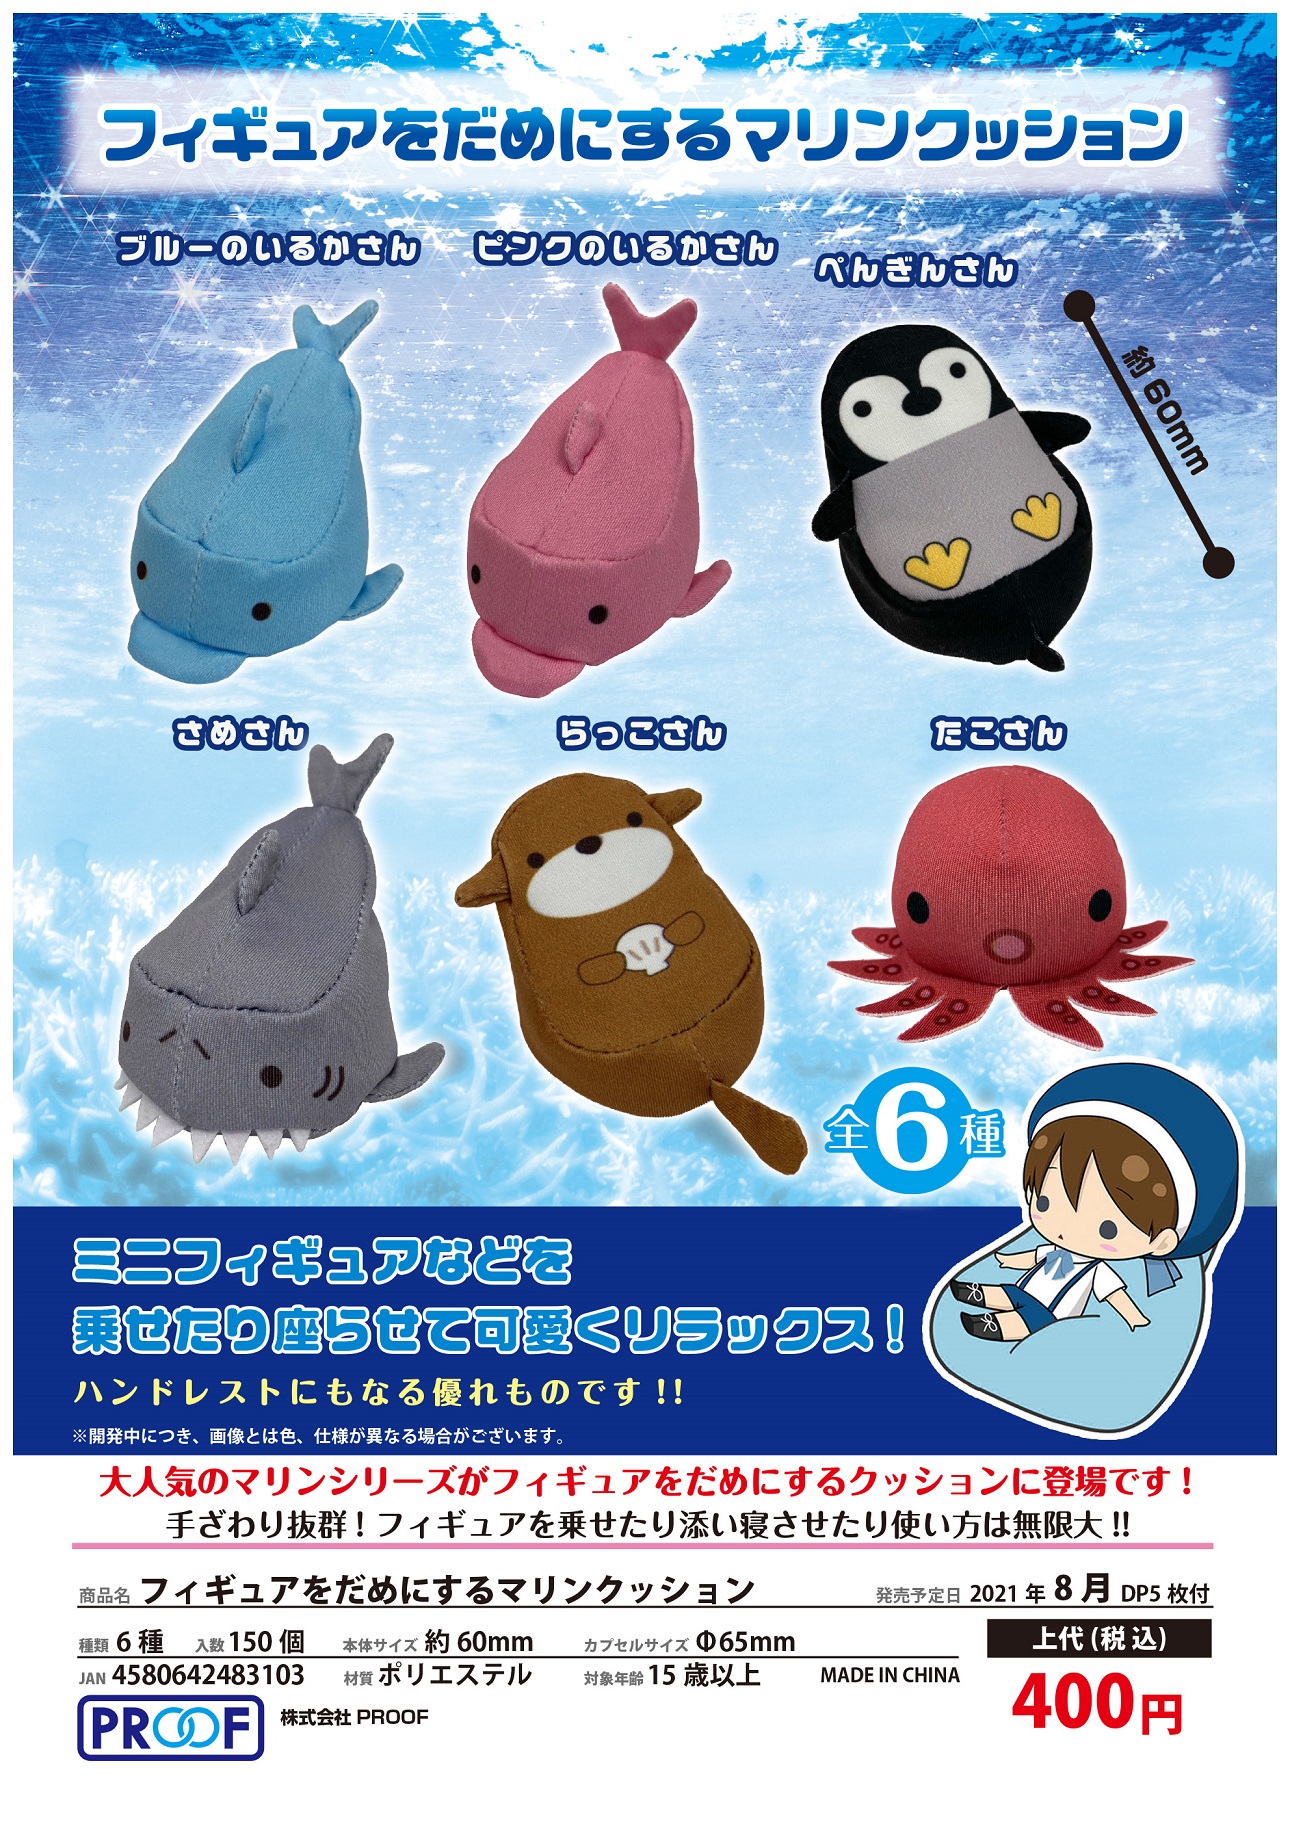 【B】400日元扭蛋 迷你懒人沙发 海洋生物Ver. 全6种 (1袋30个) 483103